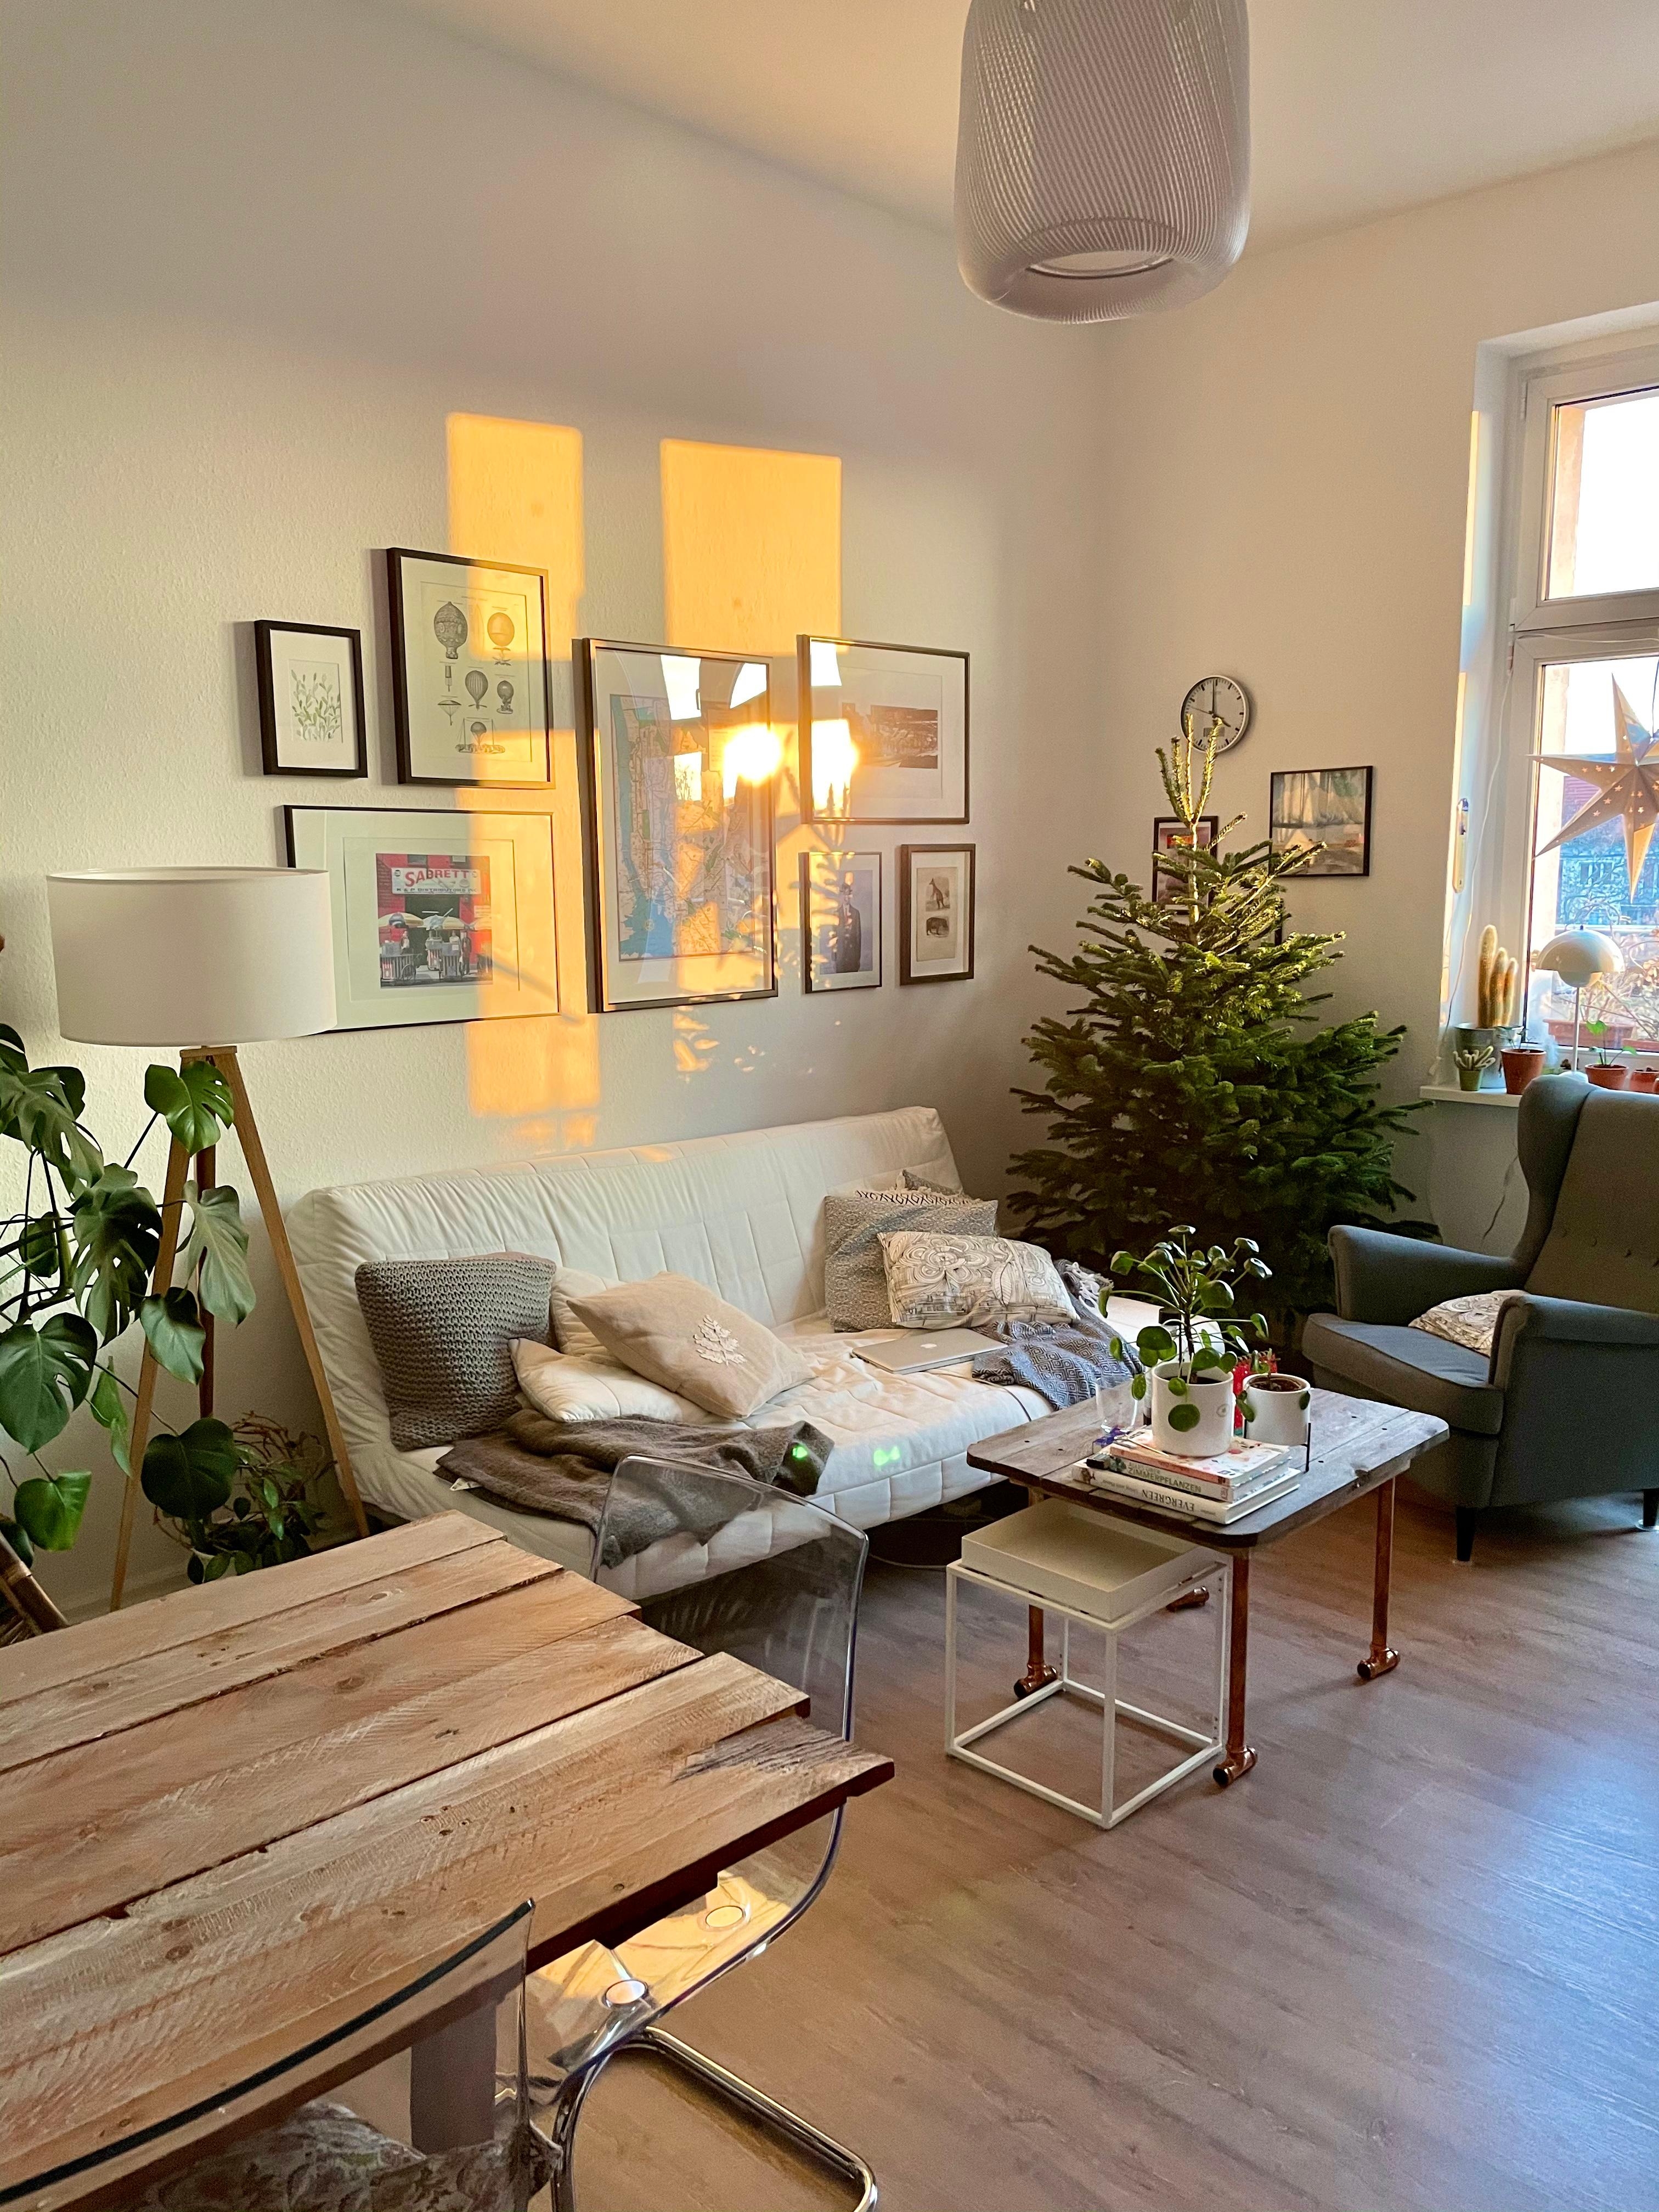 Perfekter Start in den Tag ✨ #morgensonne #wohnzimmer #weihnachtsbaum